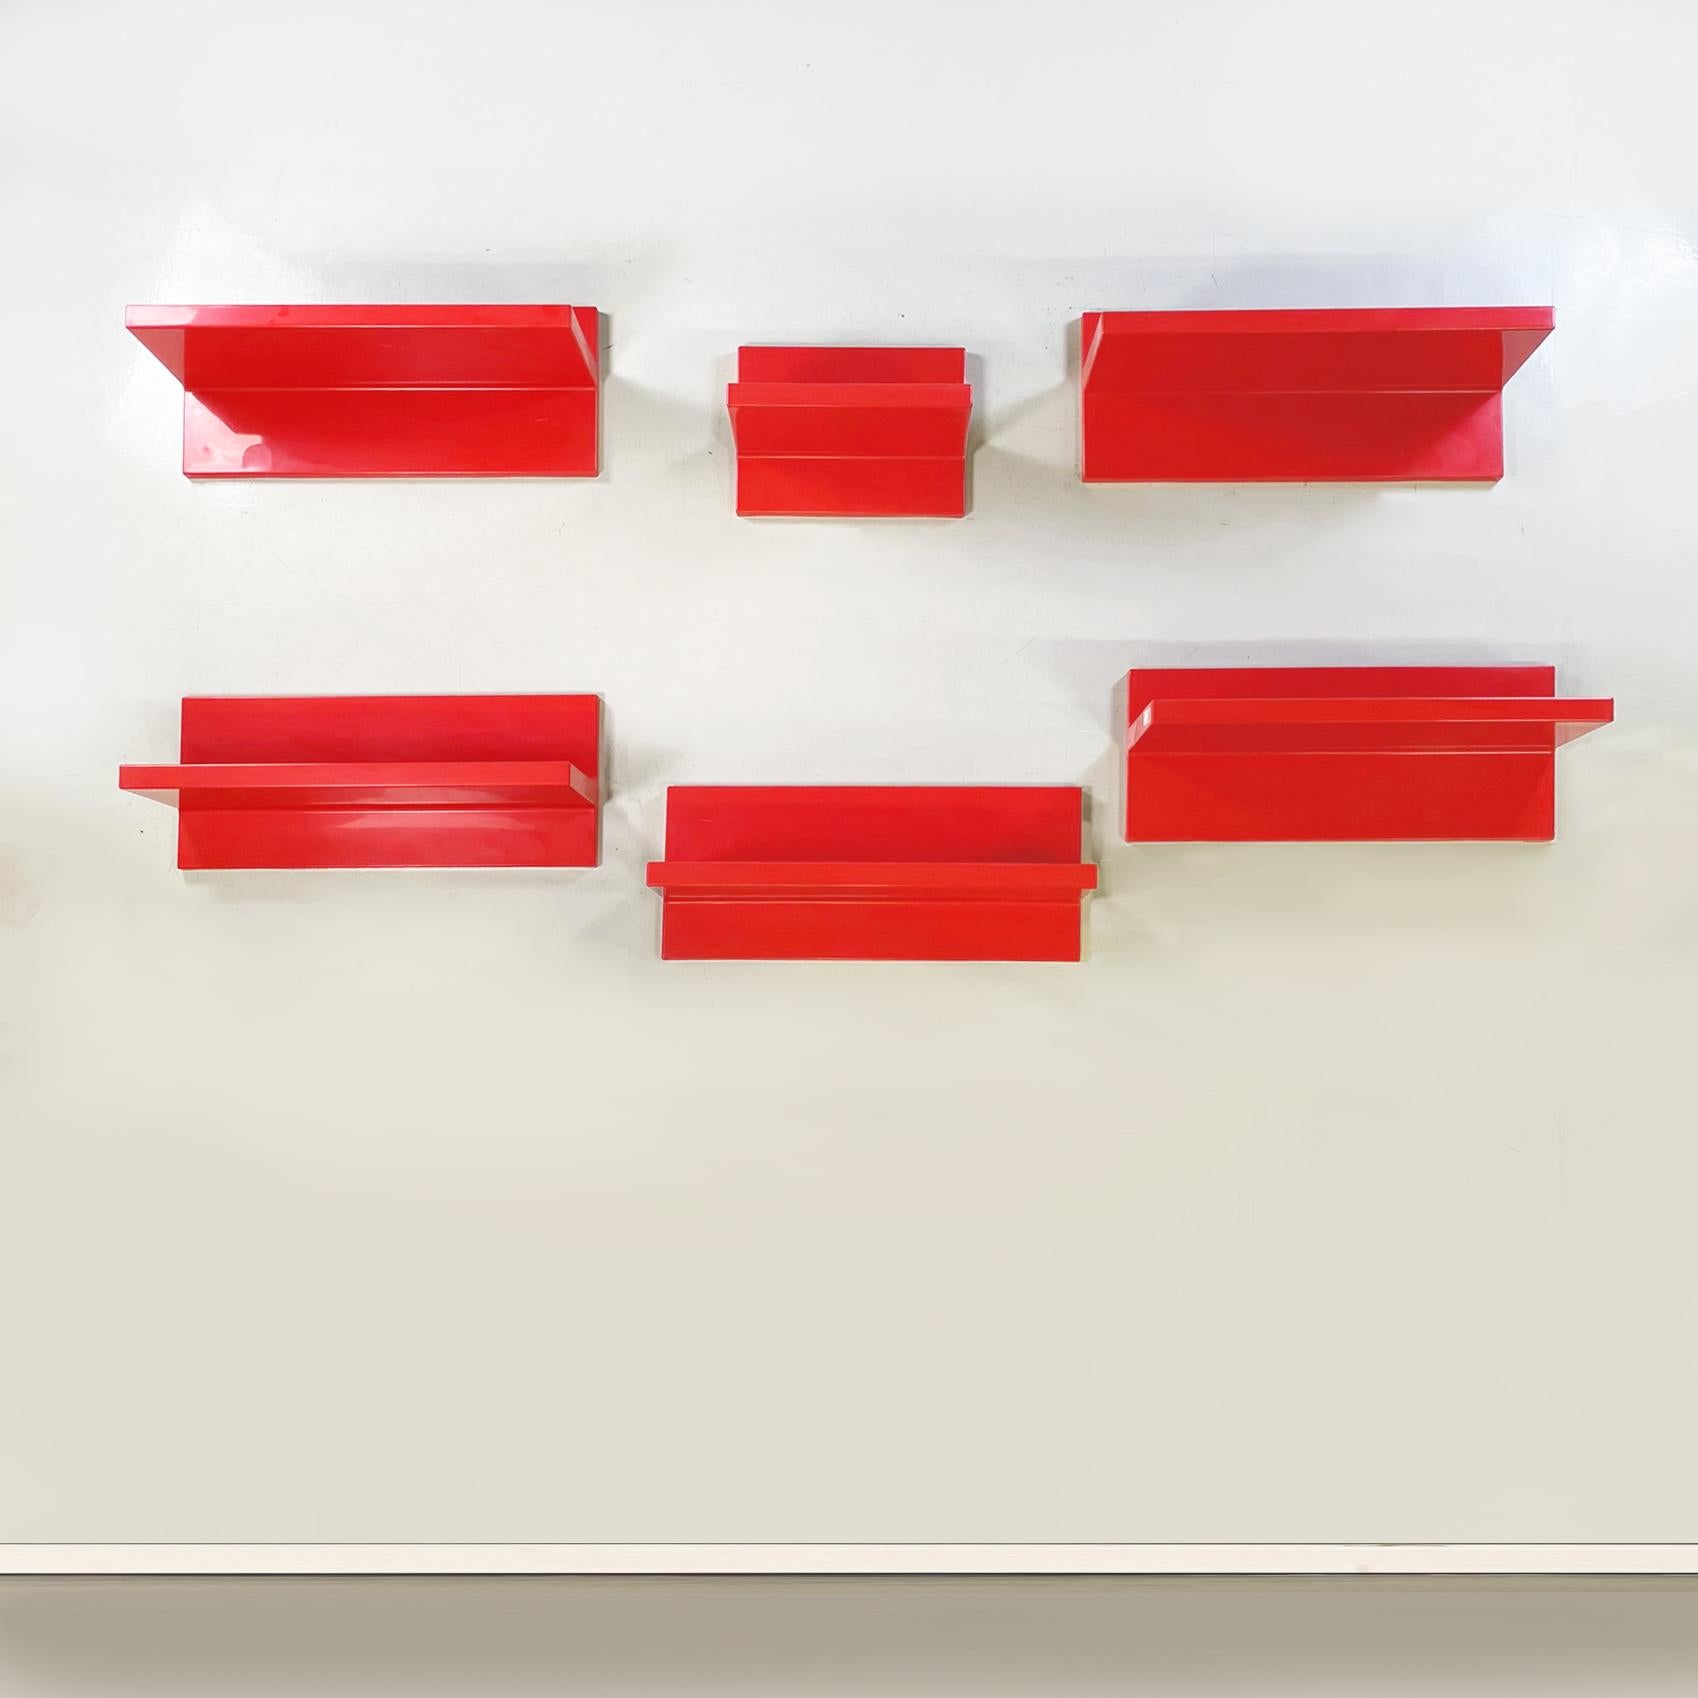 Moderne italien Étagères en plastique rouge par Marcello Siard pour Kartell, 1970
Ensemble fantastique de six étagères à profil asymétrique en plastique rouge vif. Il existe deux types de mesures : une petite et cinq grandes. Ils peuvent être montés